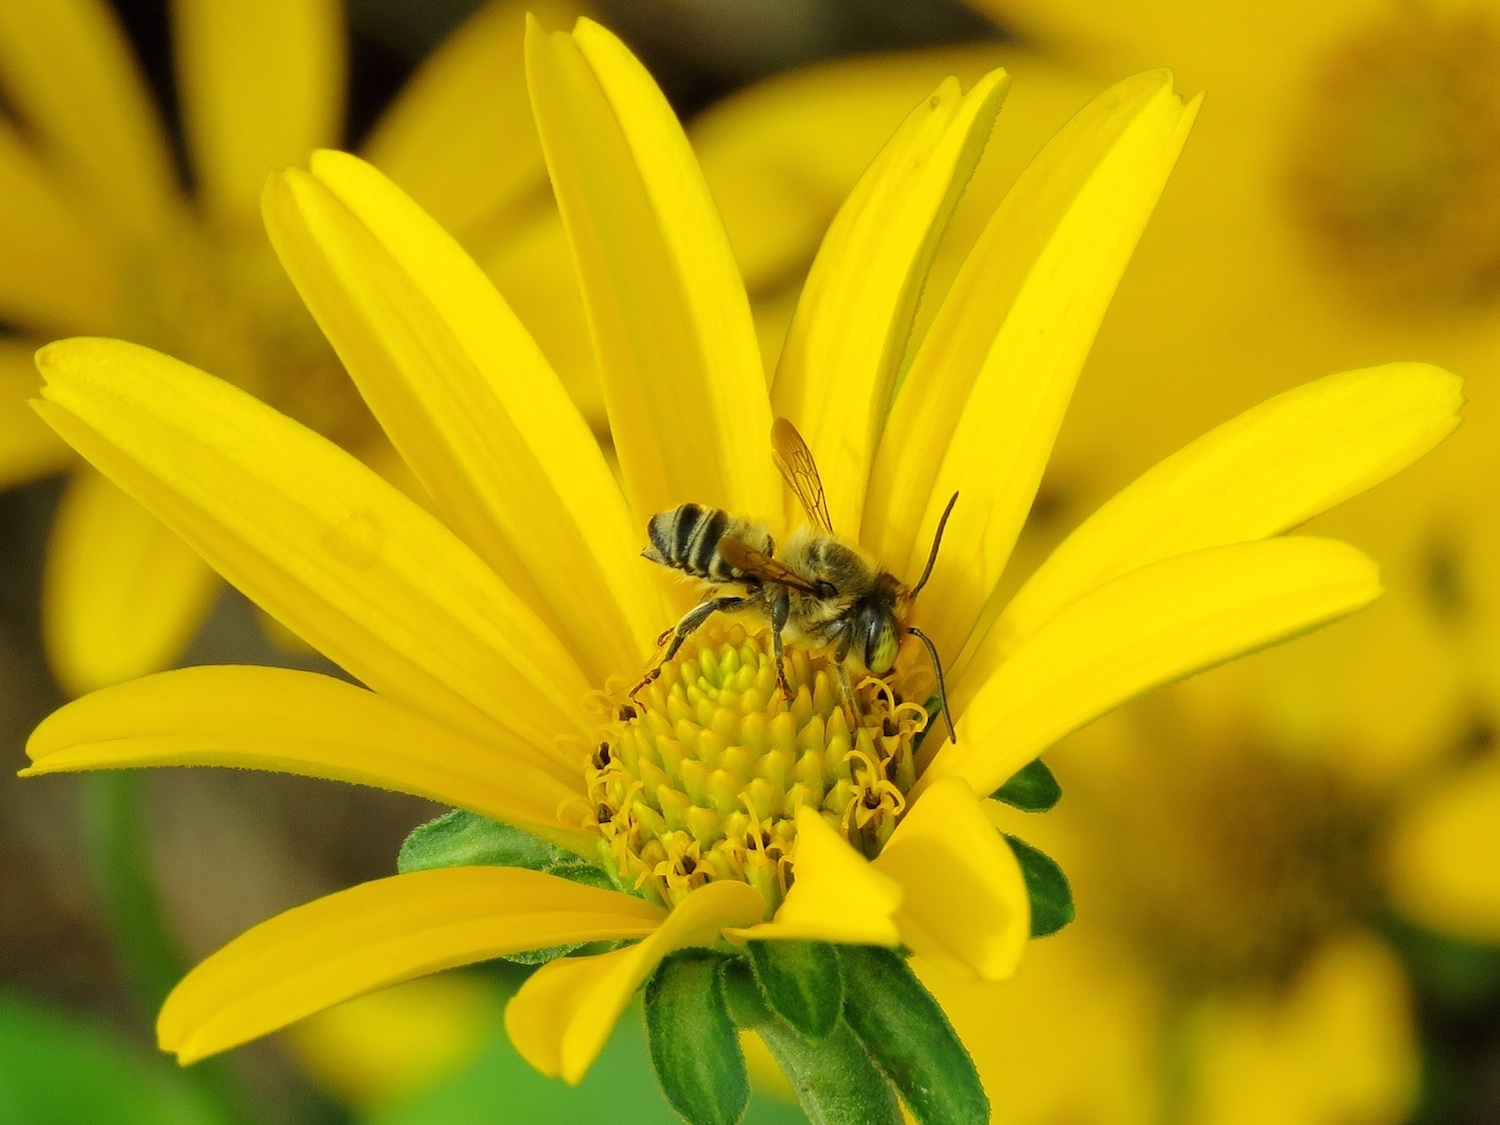 Bee in flower